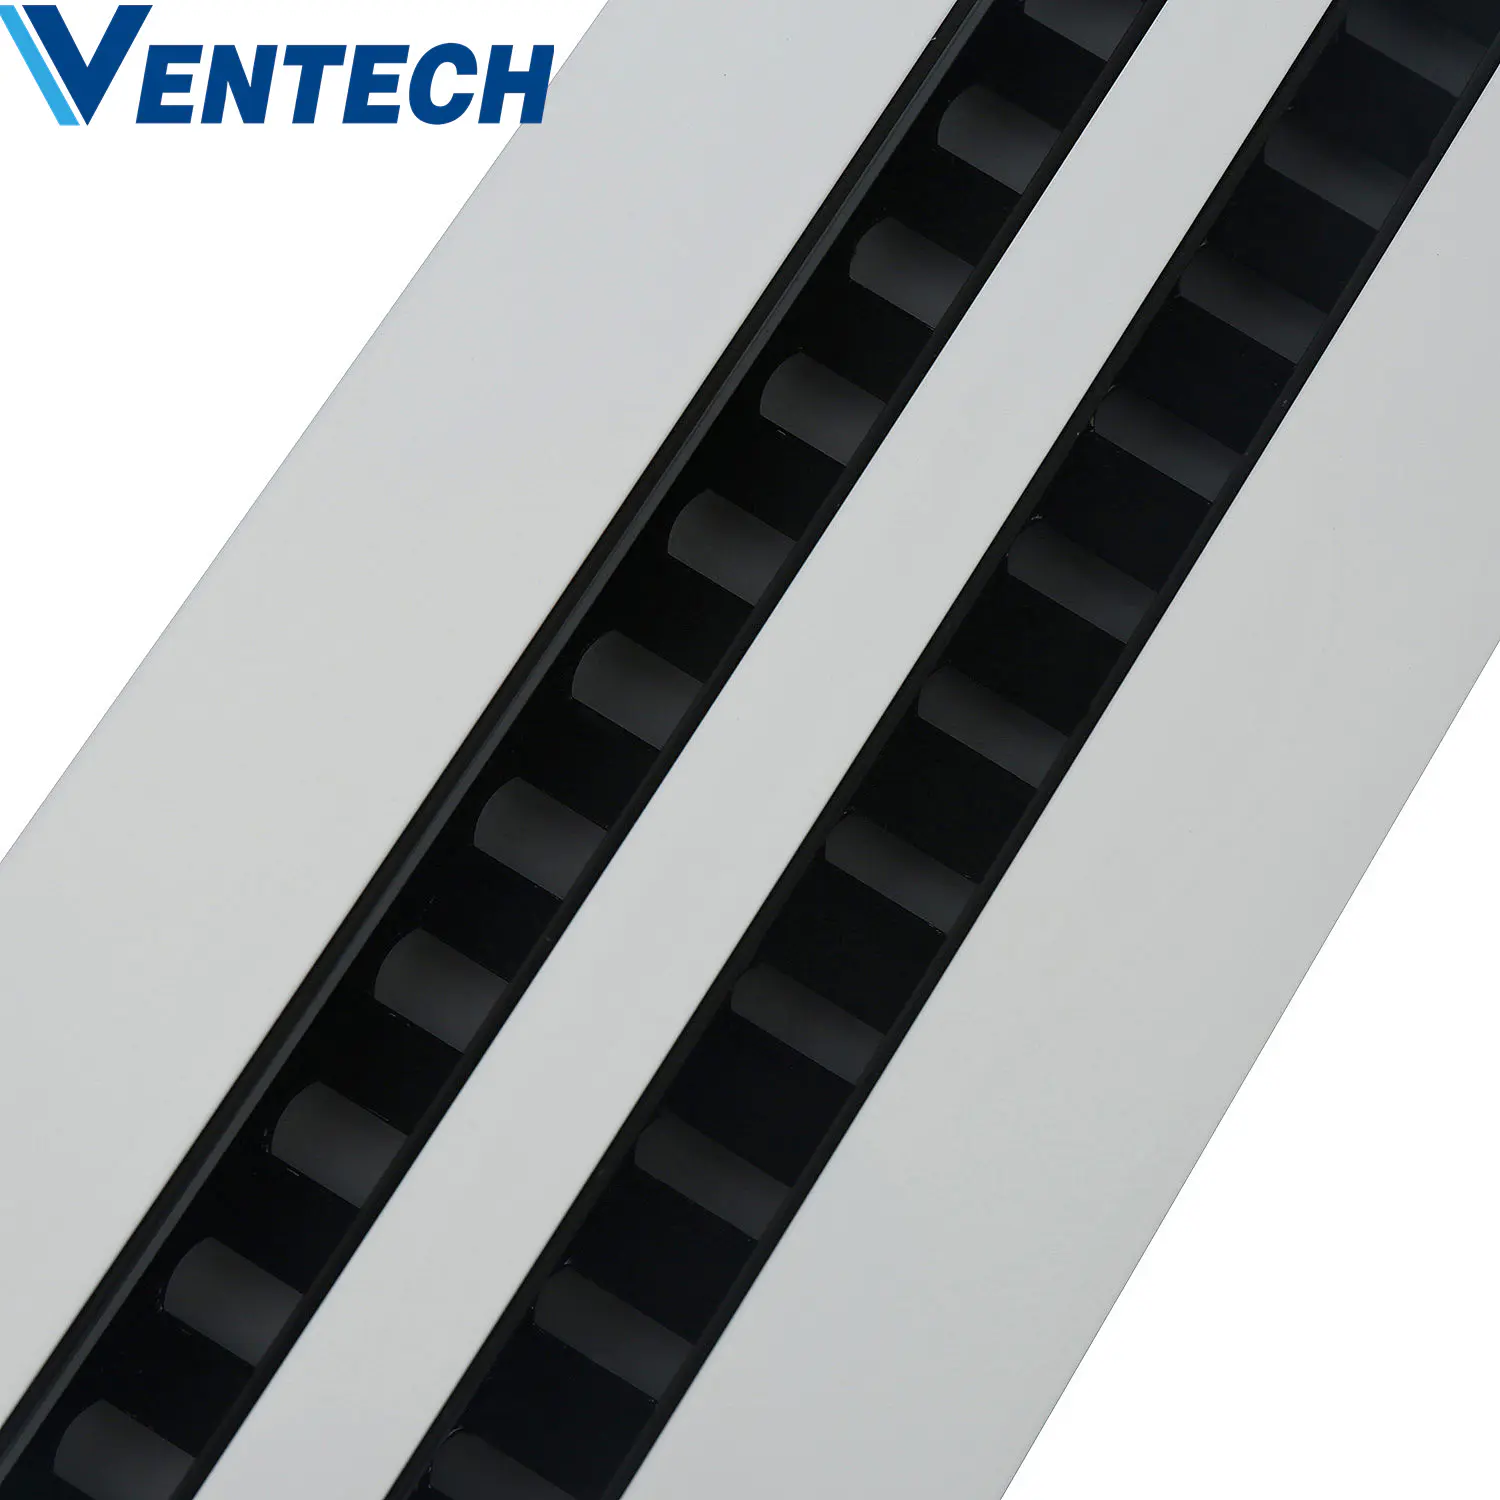 Hvac Exhaust Air Duct Ventilation Conditioning Ceiling Adjustable Aluminium Linear Slot VAV Diffuser Price